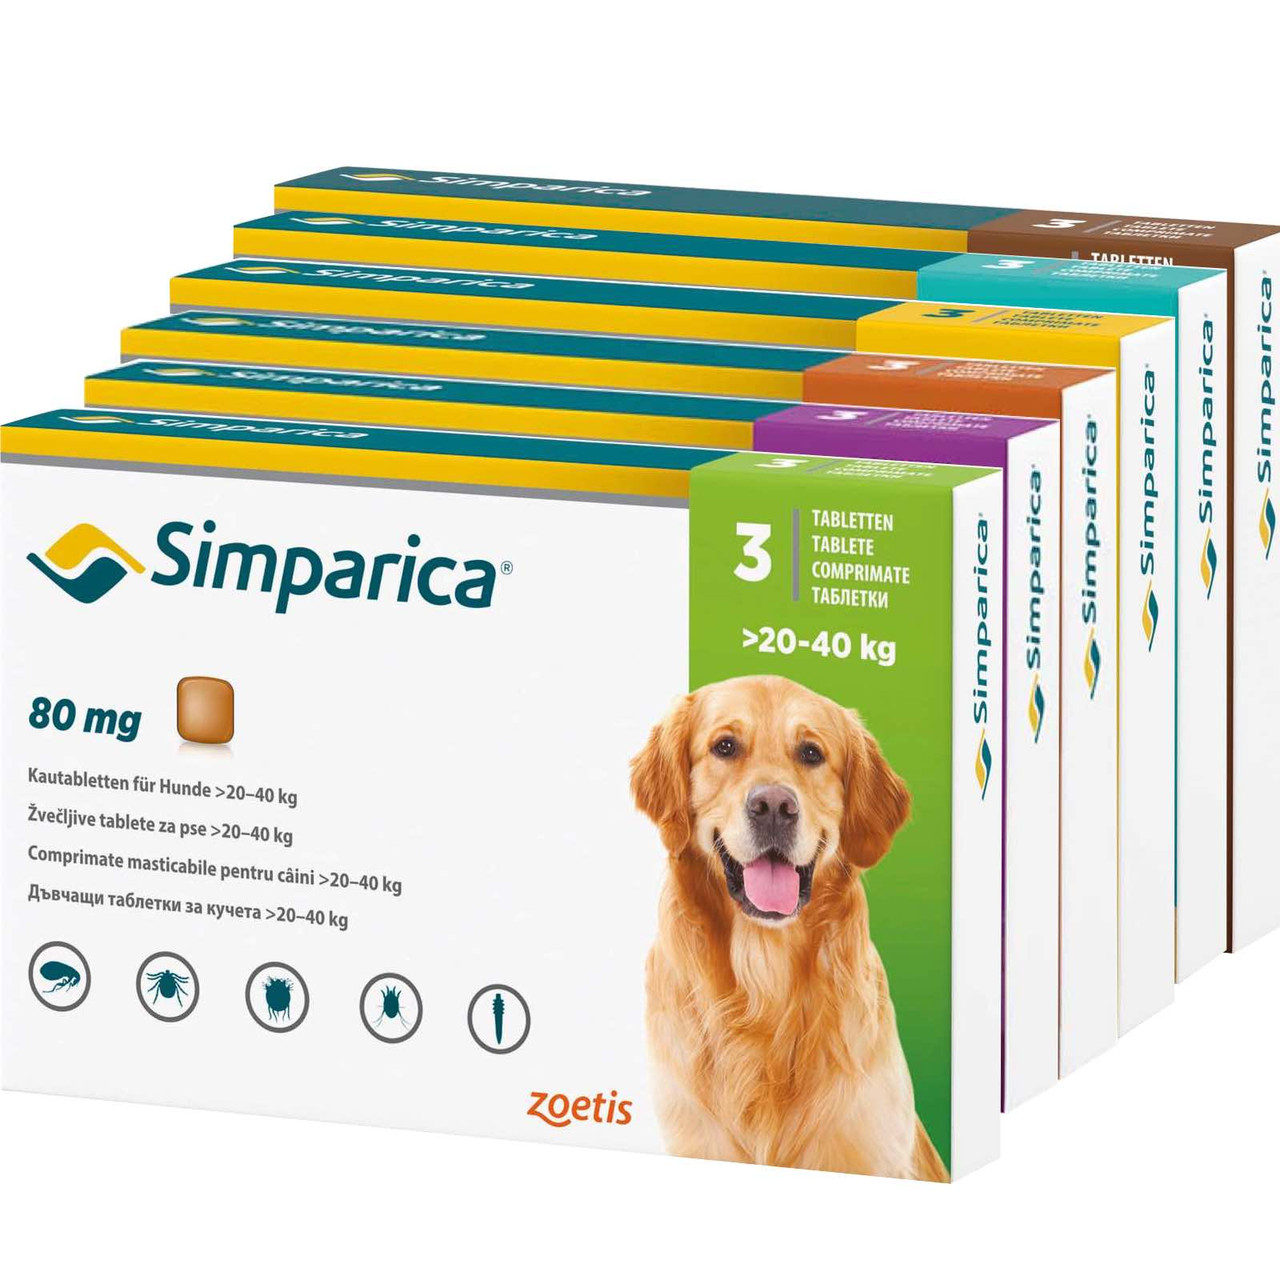 20% korting op Simparica vlooien- en tekenkauwtabletten voor honden bij Atlantic Pet Products